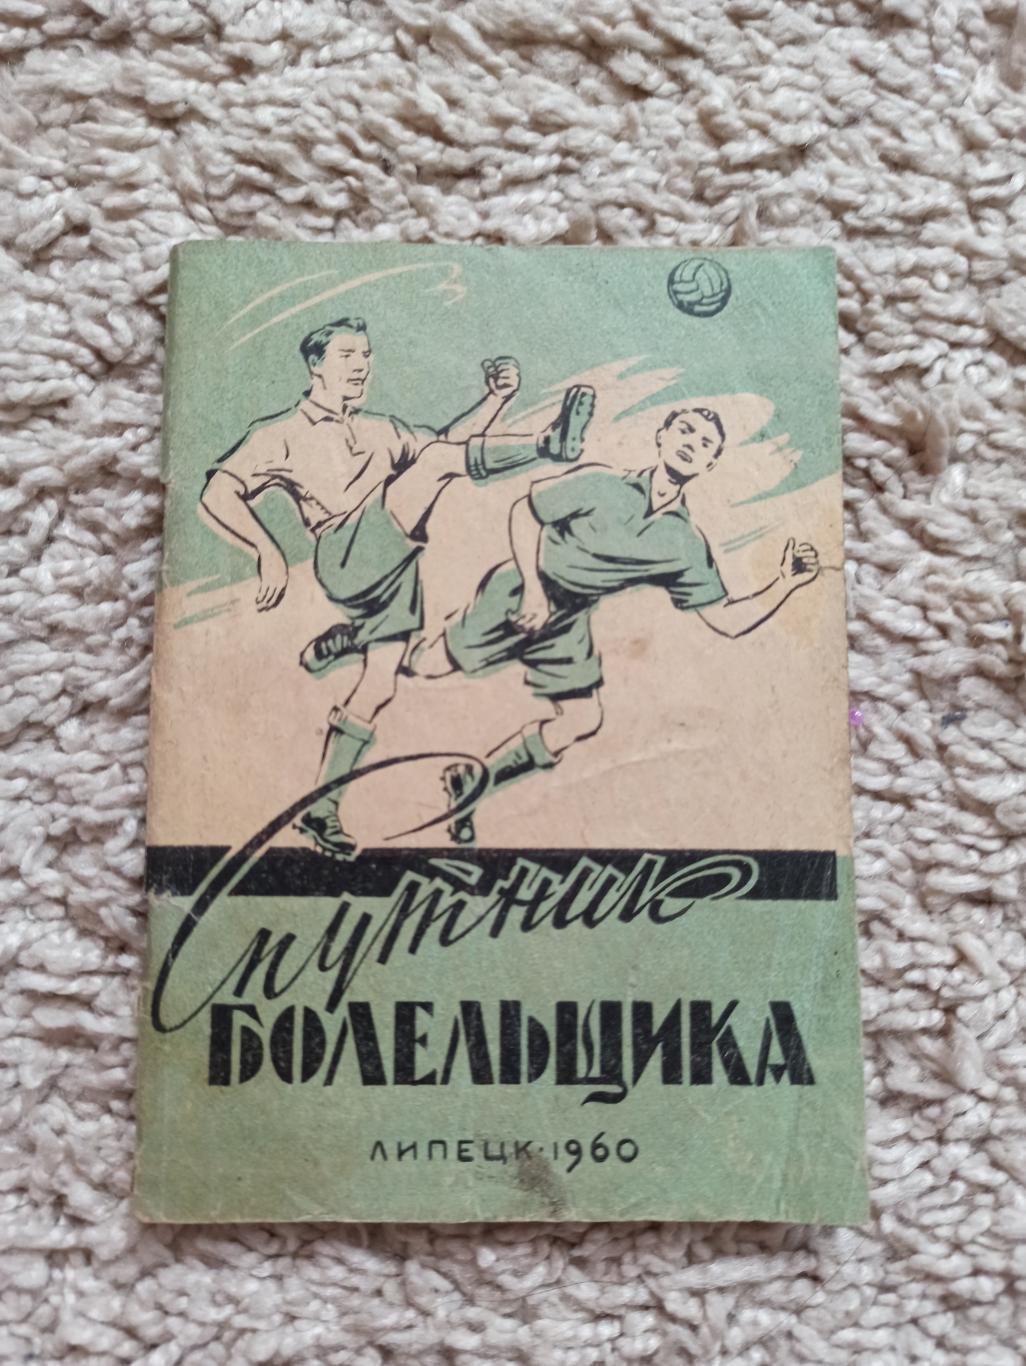 Календарь-справочник, Спутник болельщика, Липецк, 1960г., редкий